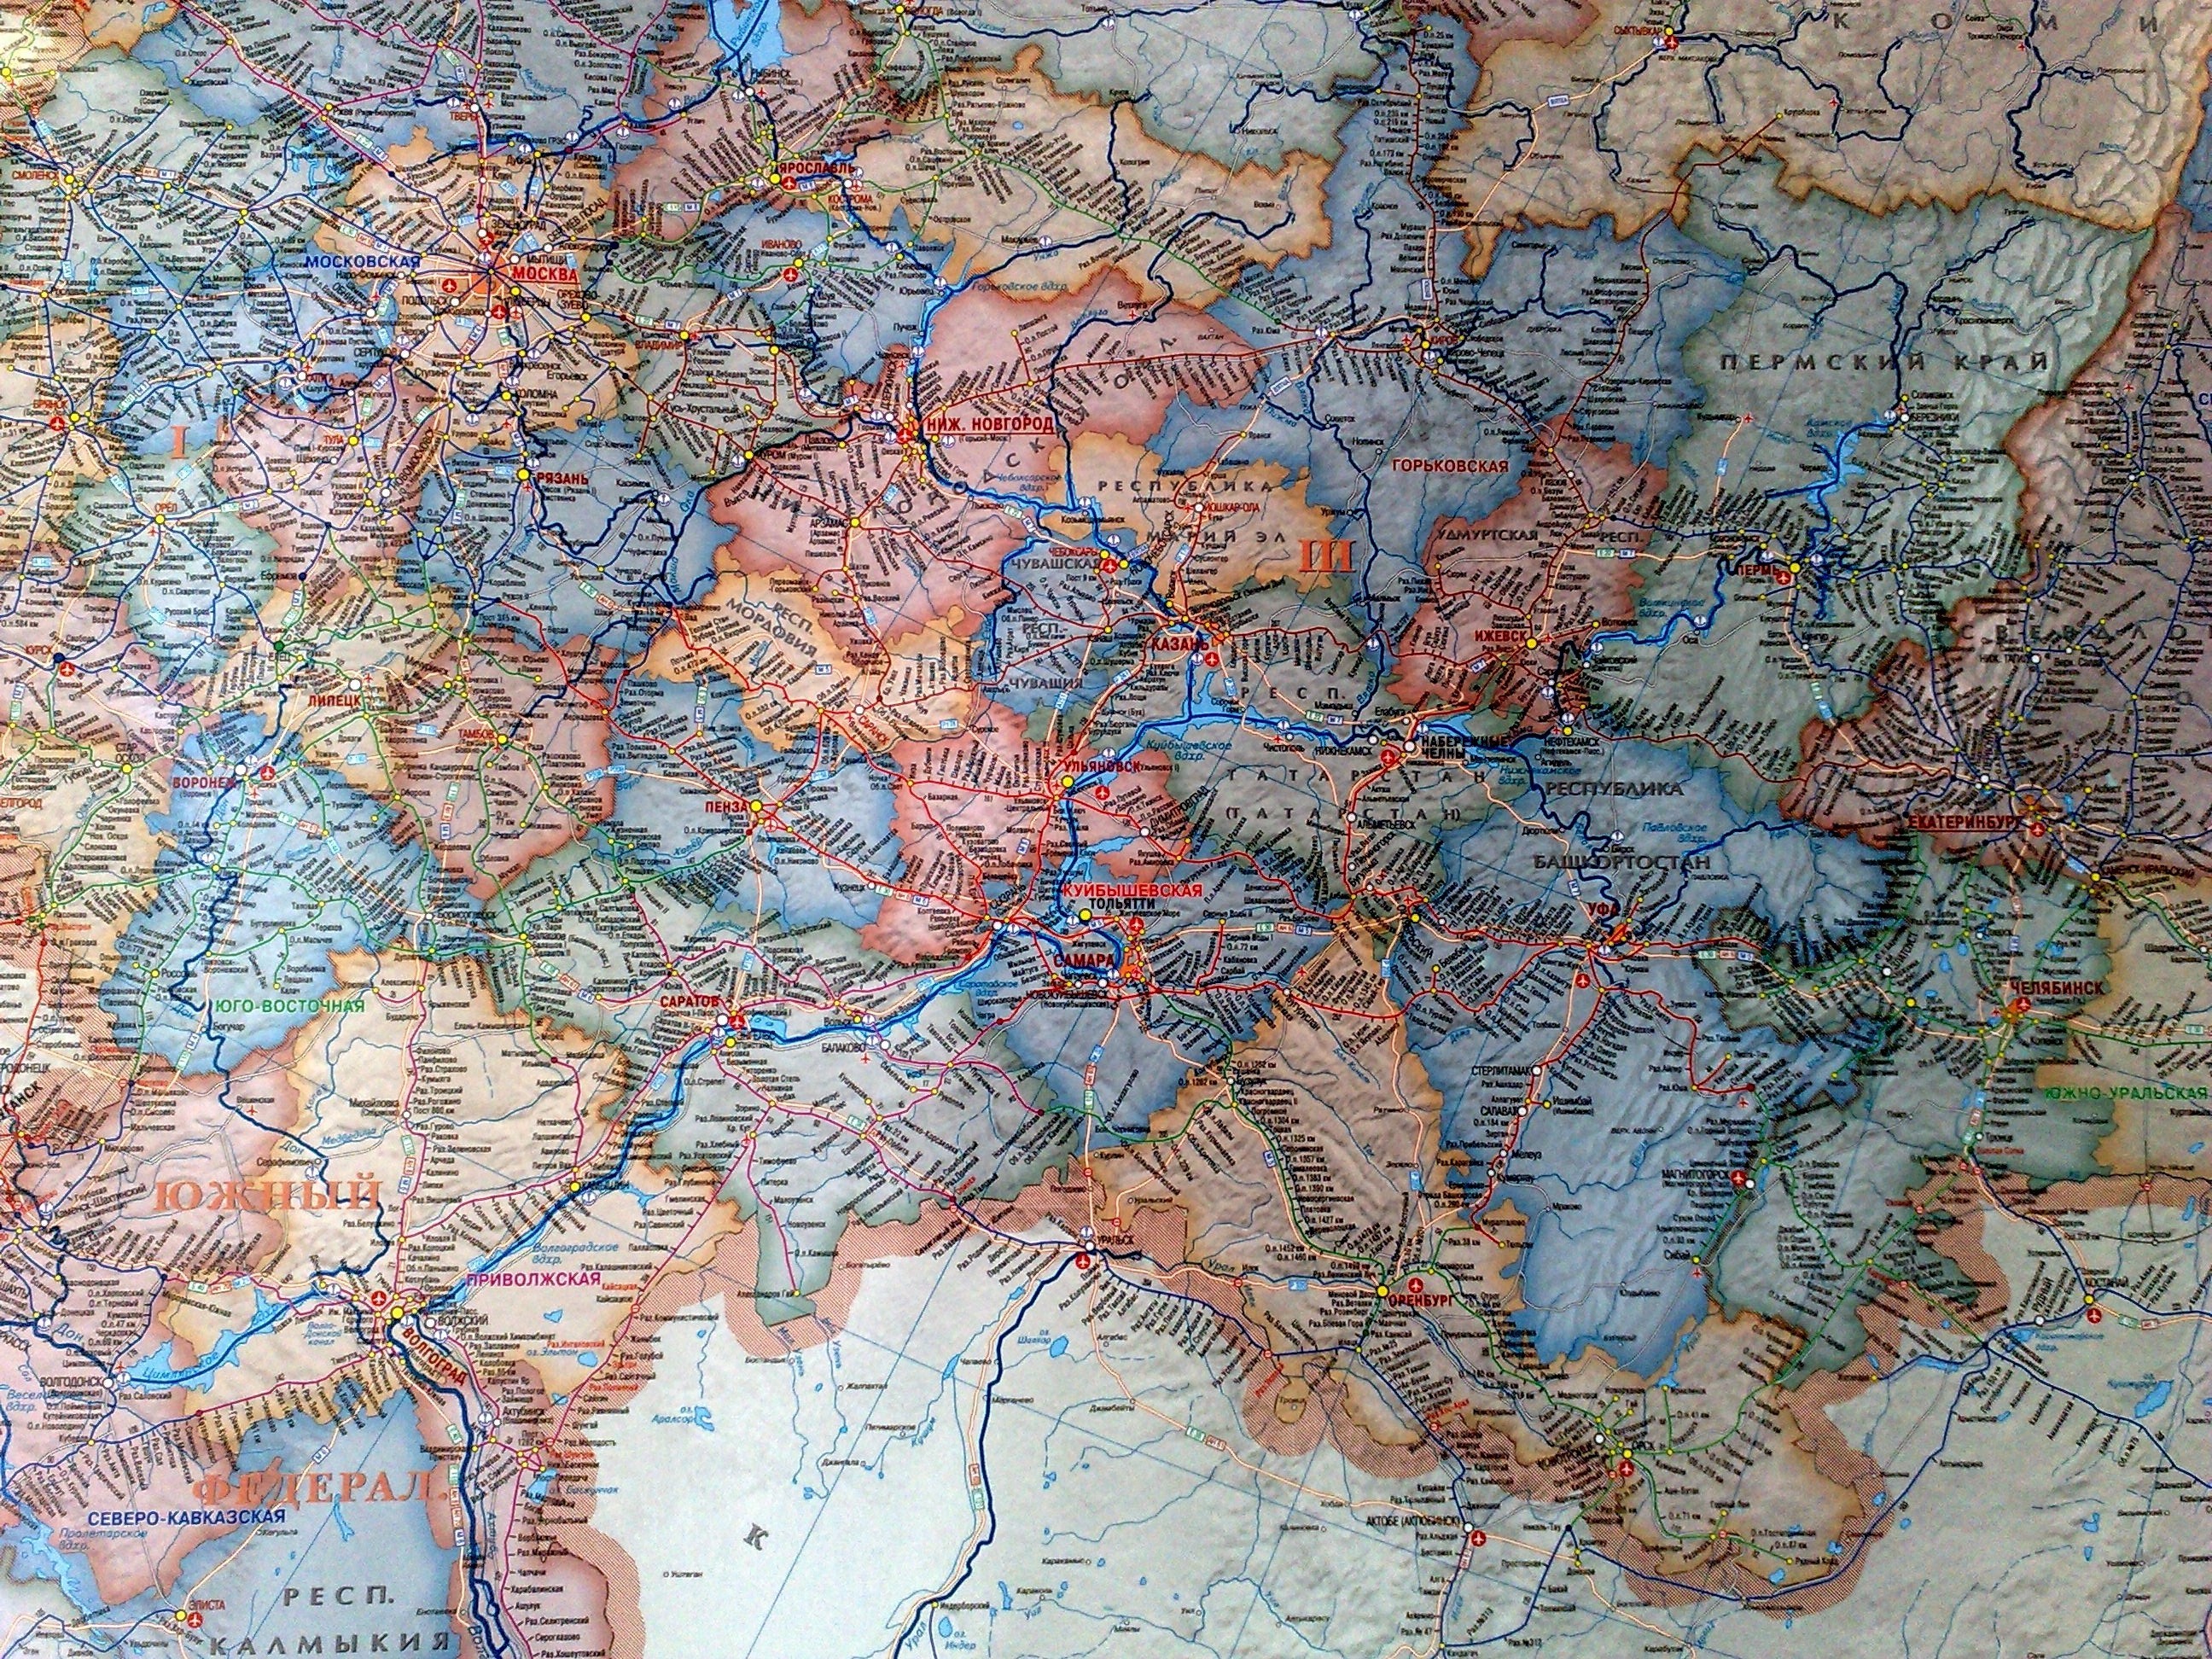 Карта автомобильных дорог россии